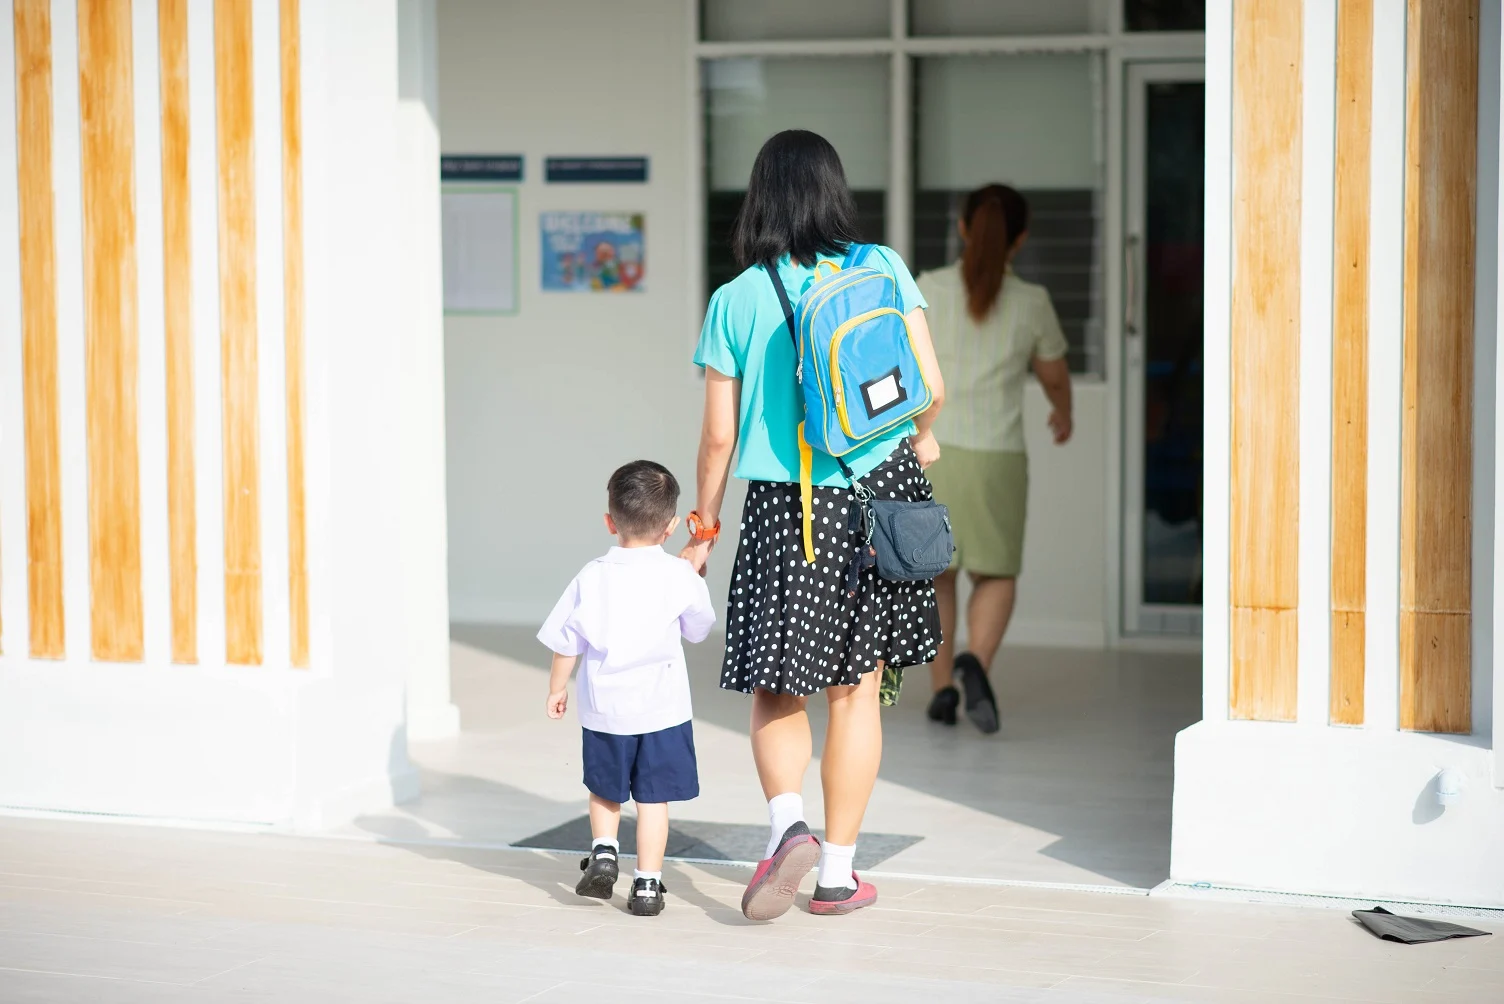 אימא והבן שלה בכניסה לבית הספר